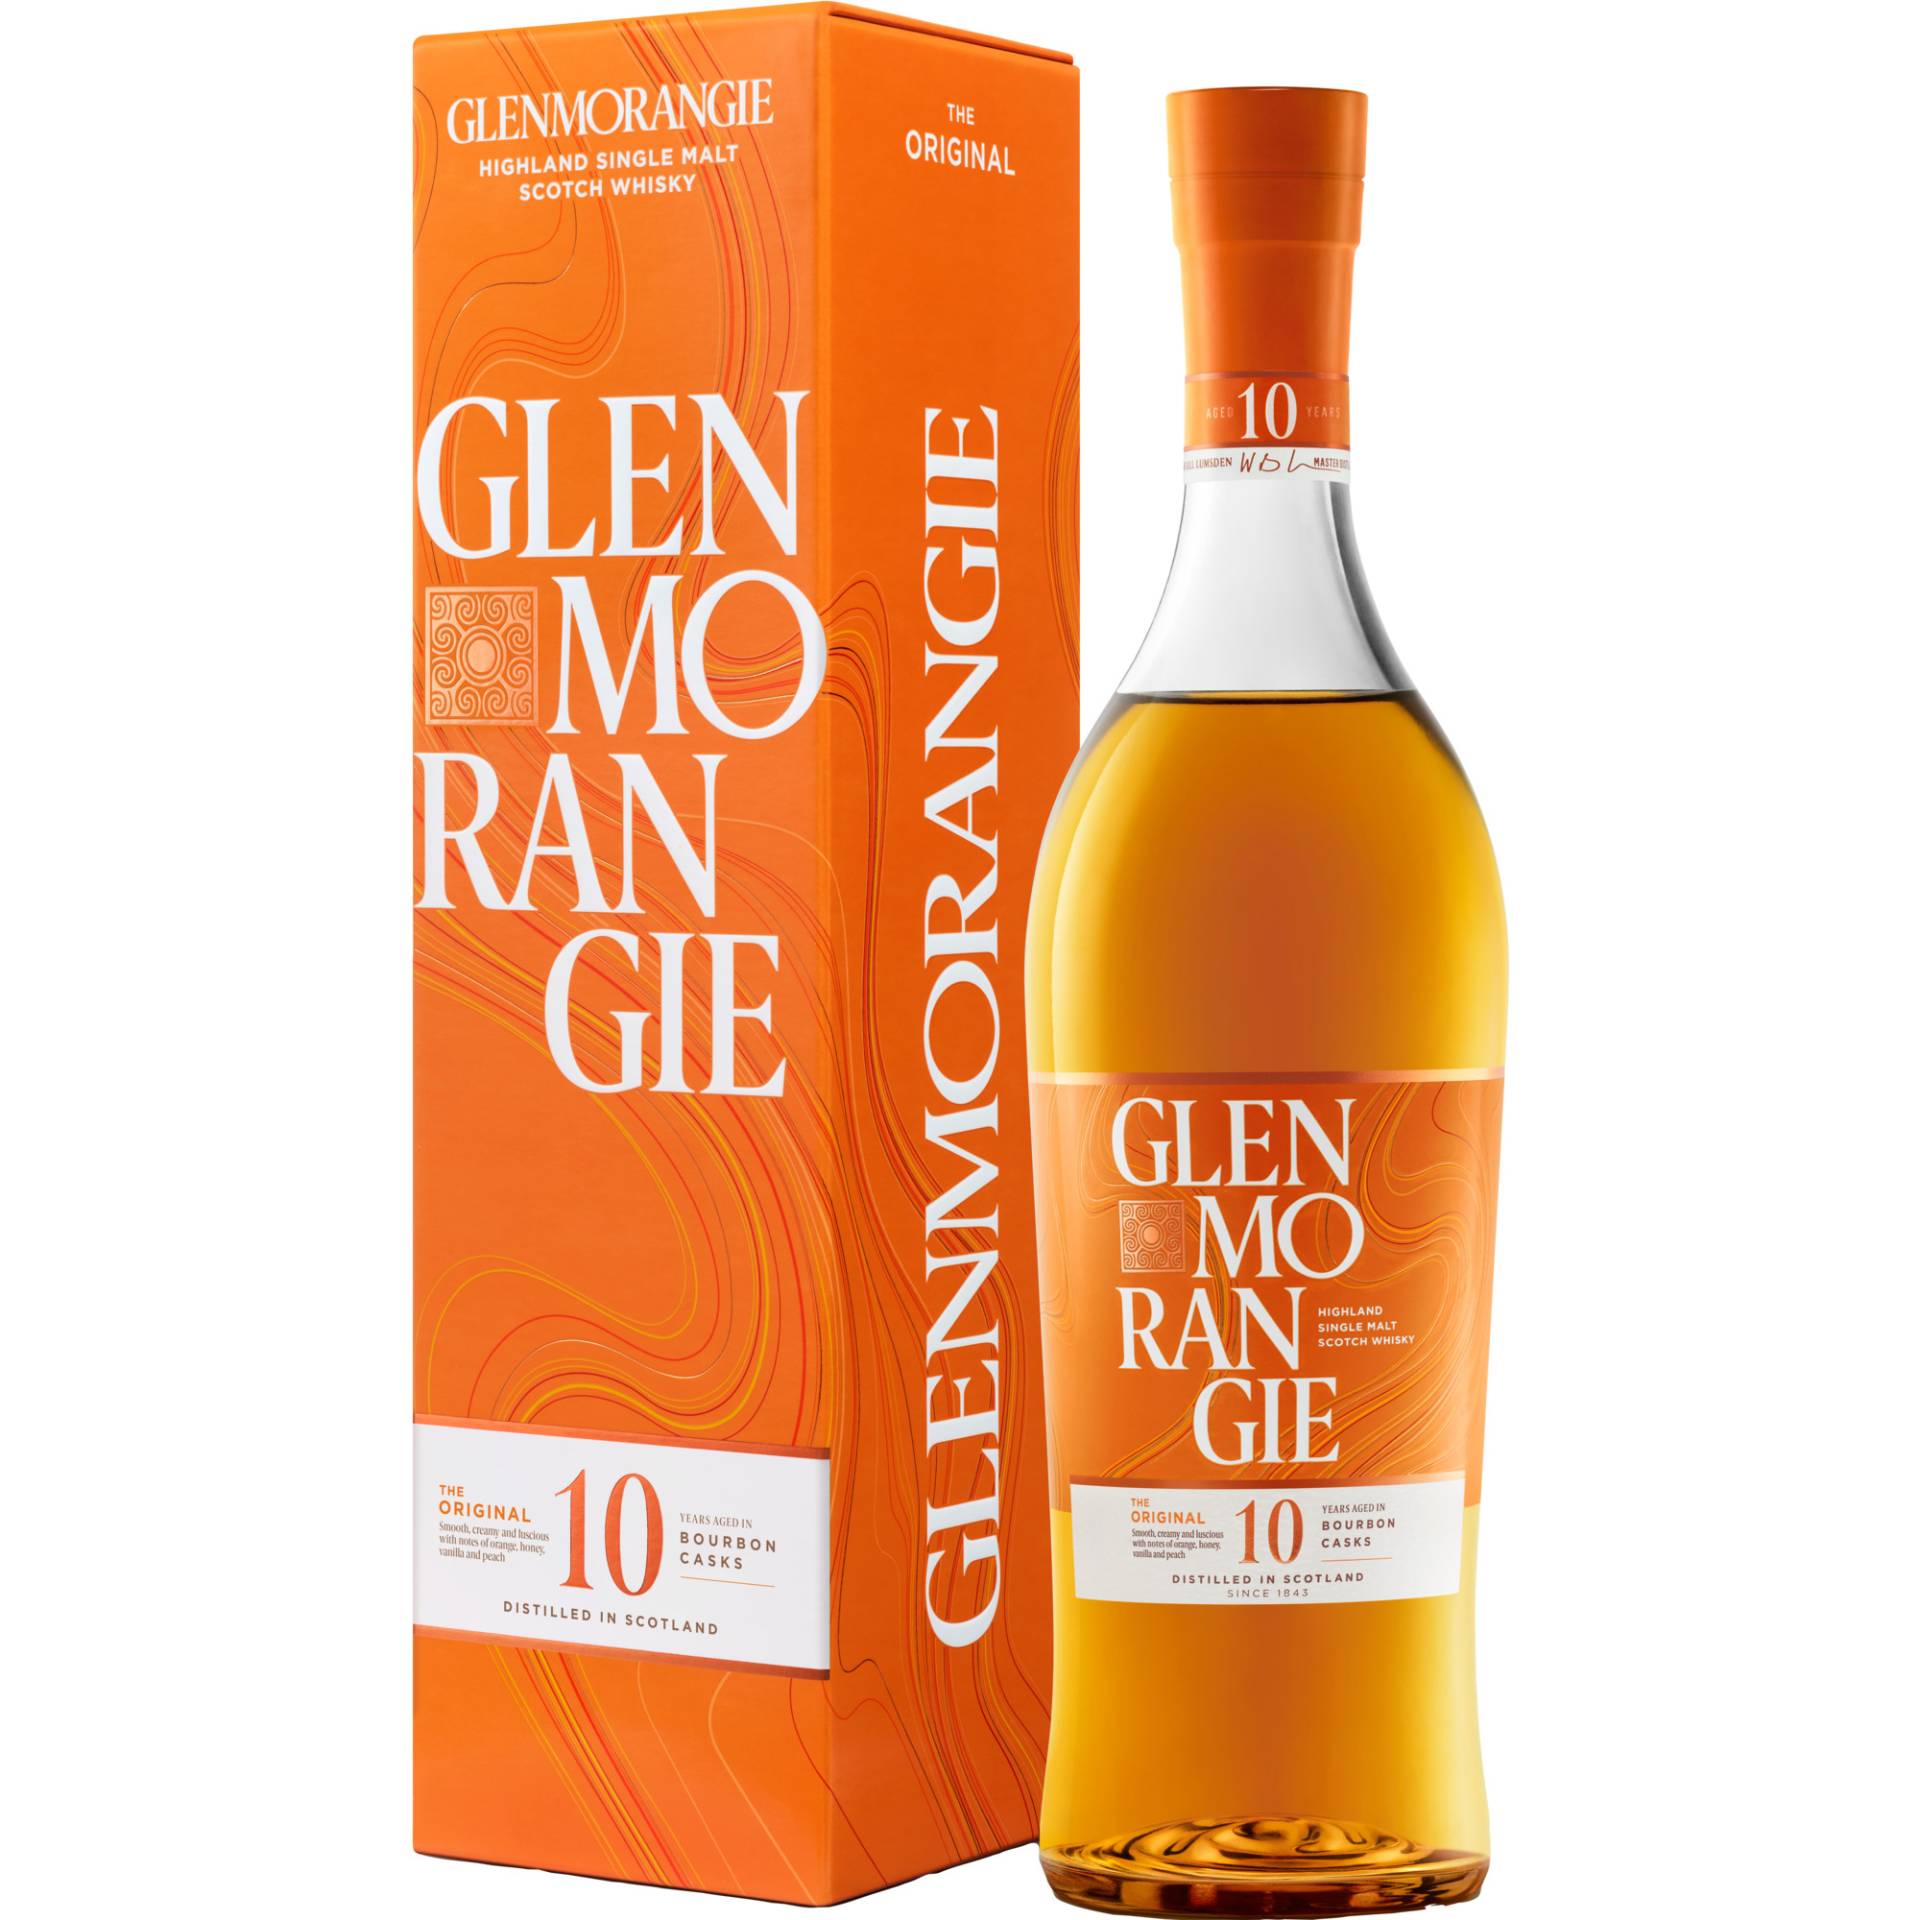 Glenmorangie 10 Years The Original, Highland Single Malt Scotch Whisky, 0,7 L, 40% Vol, Schottland, Spirituosen von Moët Hennessy Deutschland GmbH , Seidlstrasse 23, 80335 München, Deutschland